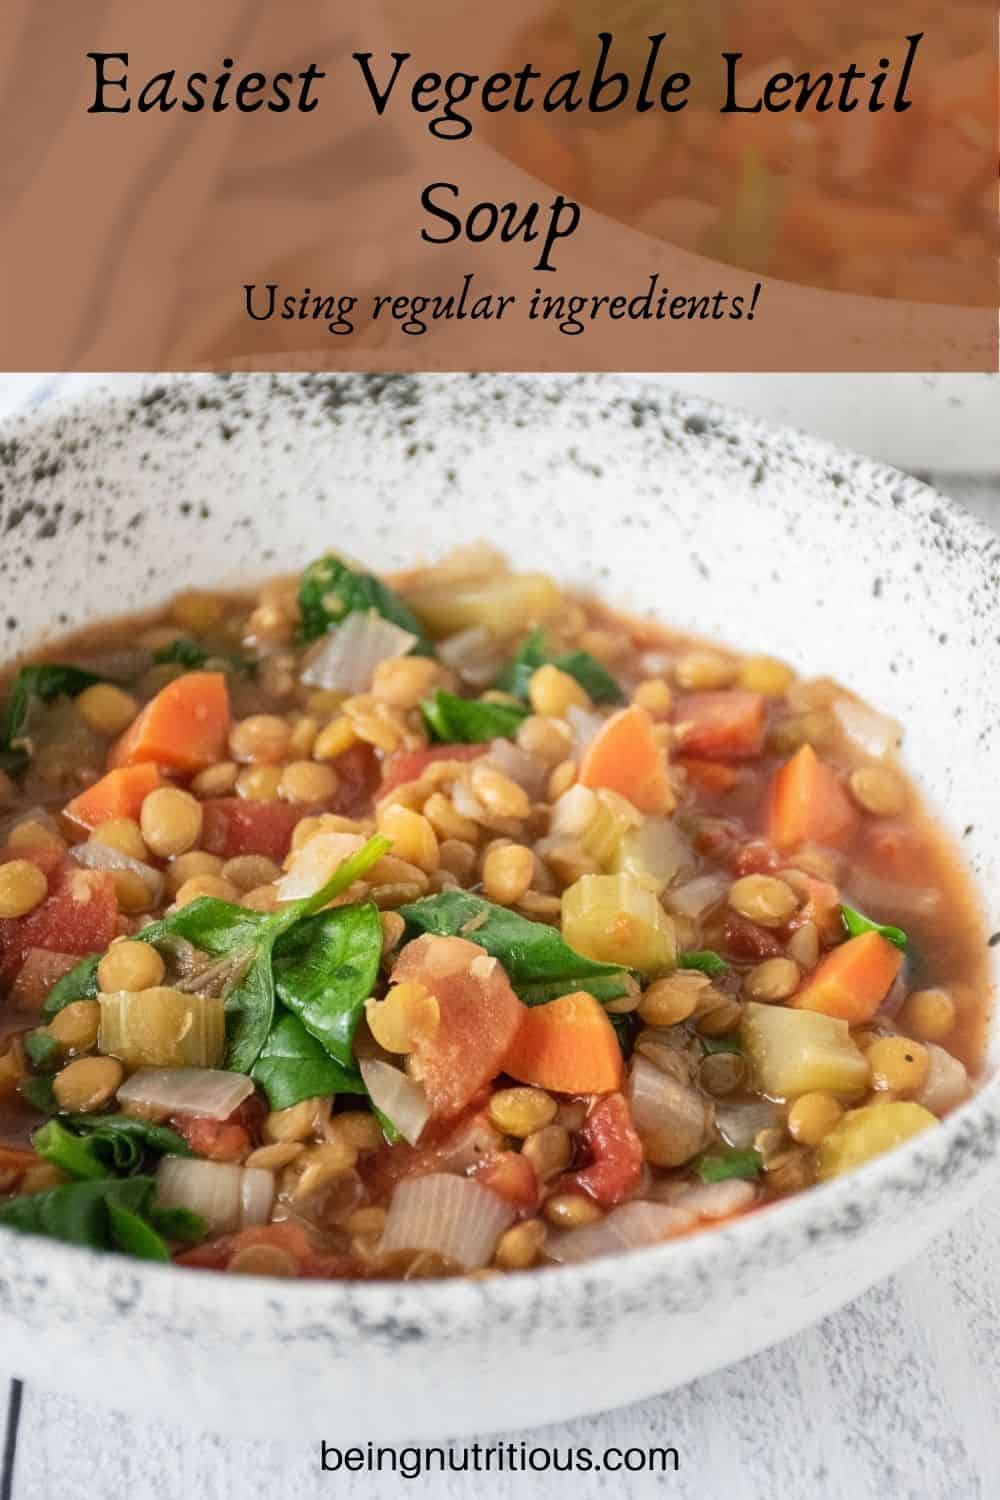 Lentil soup in a bowl. Text overlay: Easiest Vegetable Lentil soup; using regular ingredients!